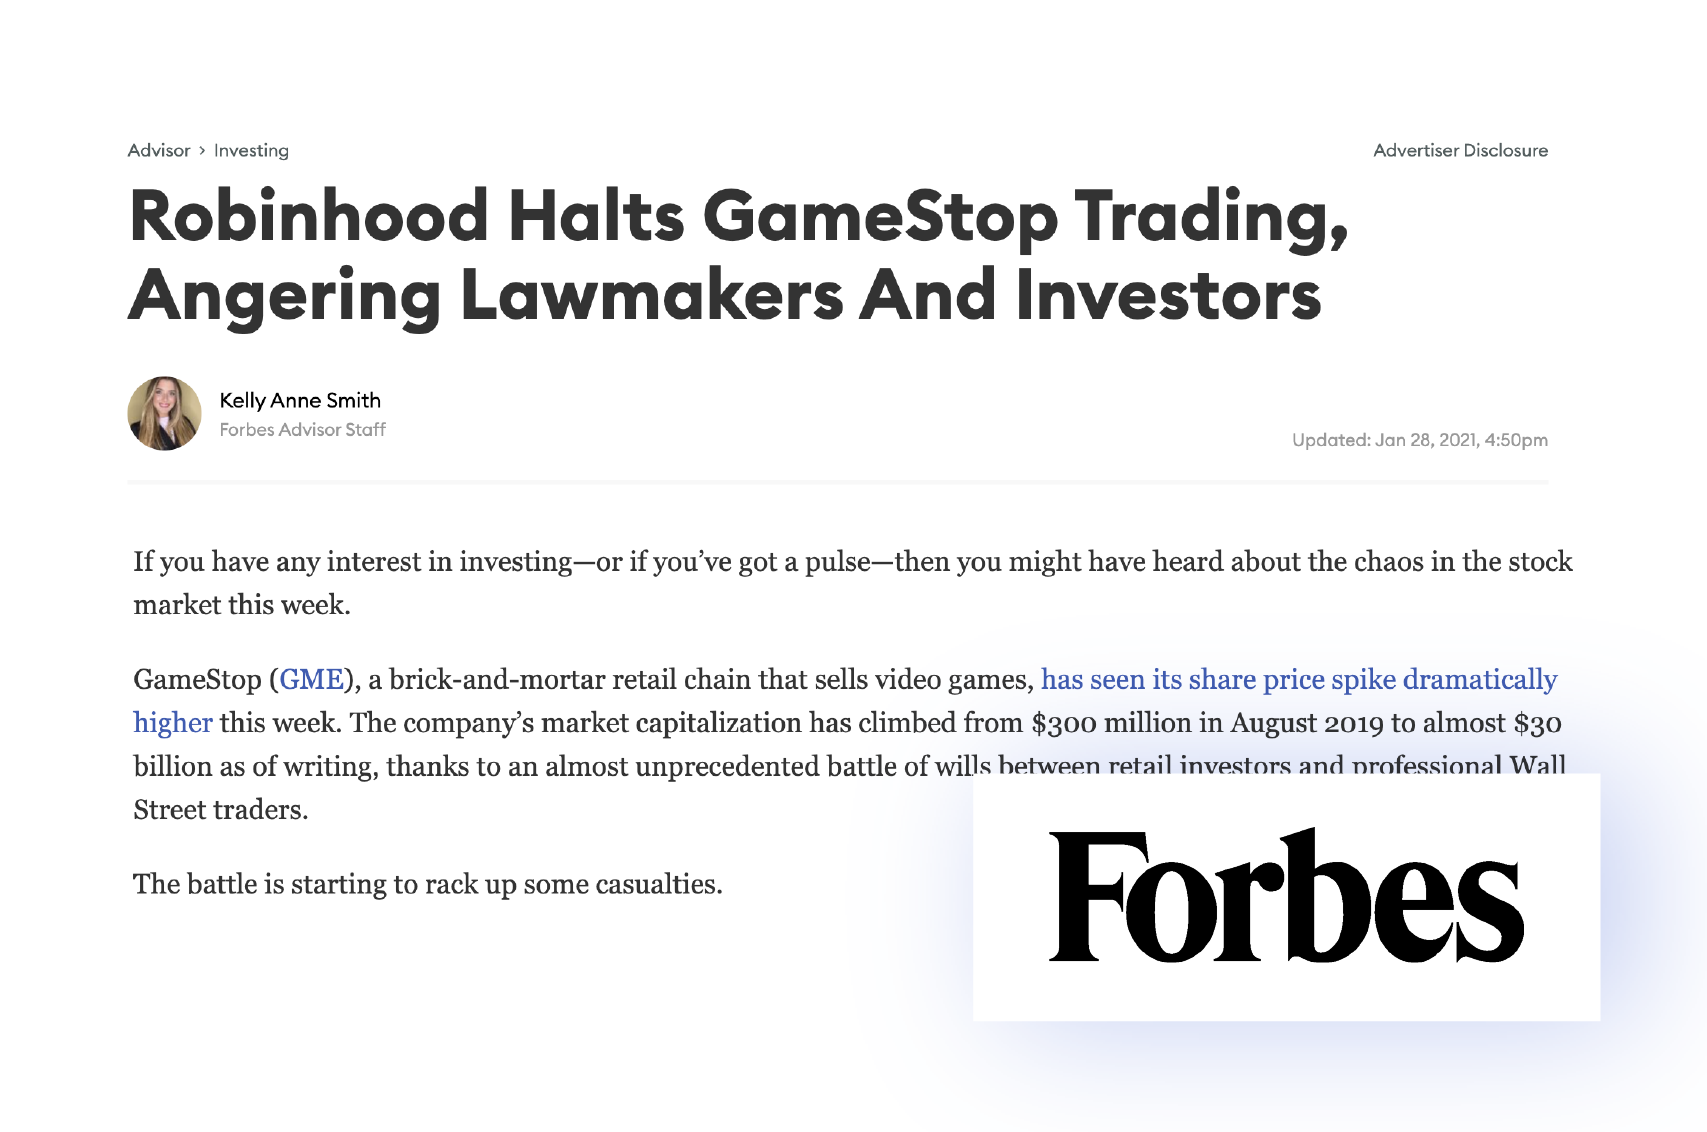 虽然罗宾汉打出的旗号是“为所有人提供金融服务”，但在平台暂停了GameStop交易后，许多散户投资者不禁怀疑：罗宾汉究竟是为所有人服务还是只为华尔街的对冲基金服务呢？